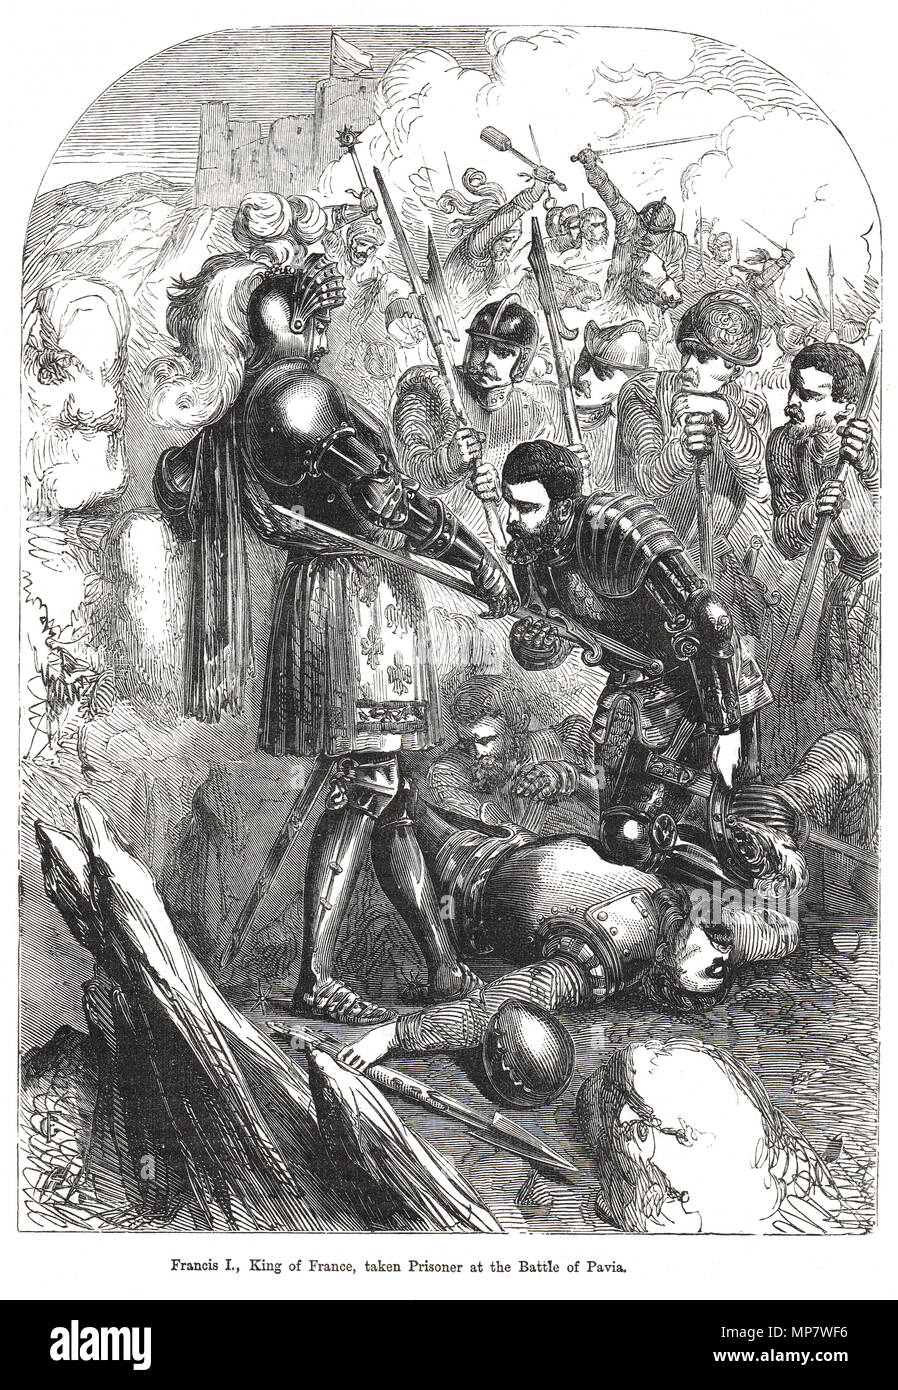 La capture de François Ier, roi de France, fait prisonnier à la bataille de Pavie, 24 février 1525 Banque D'Images